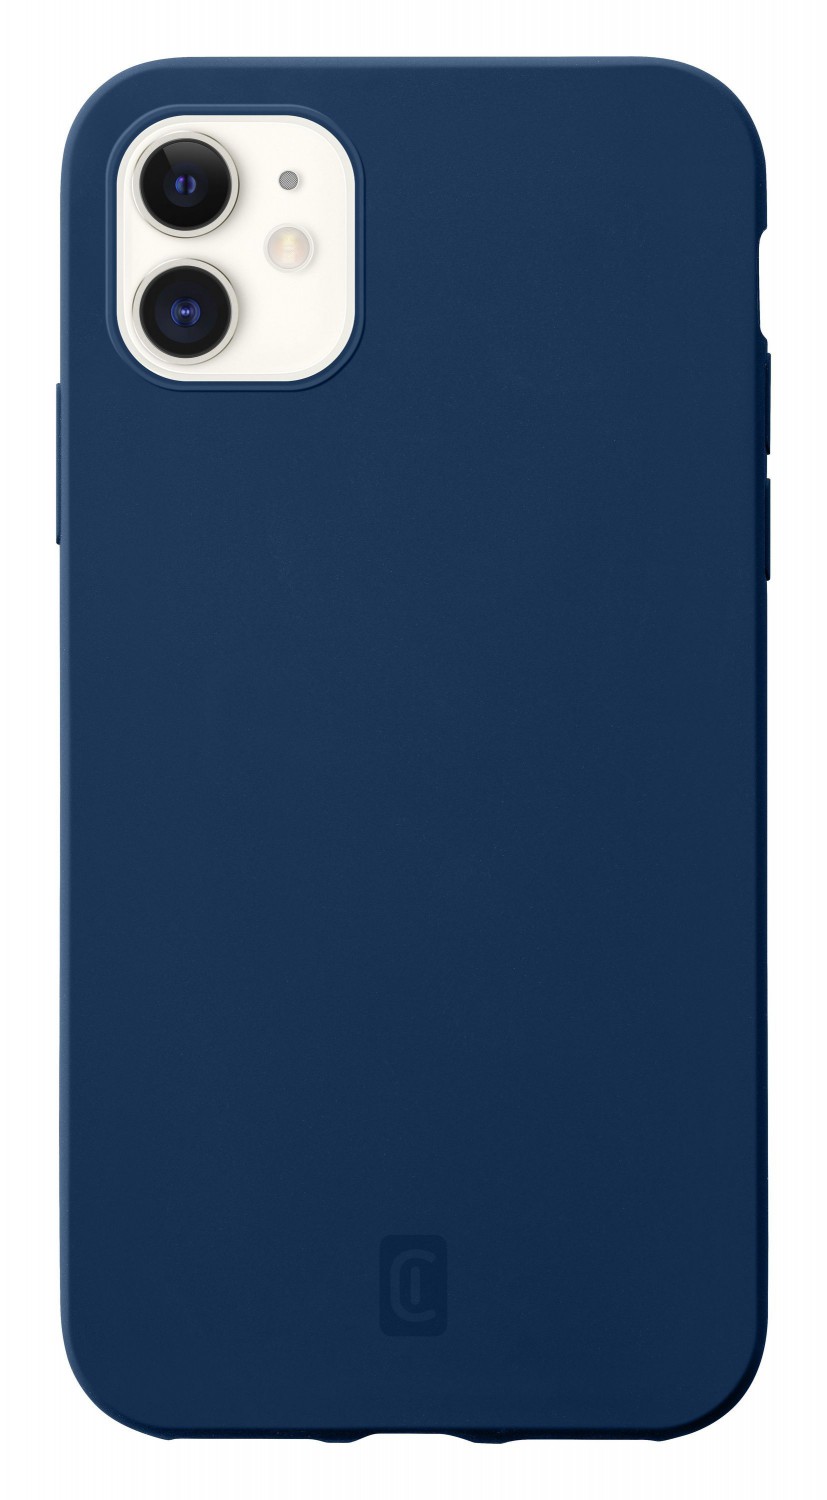 Cellularline Sensation silikonový kryt Apple iPhone 12 mini blue